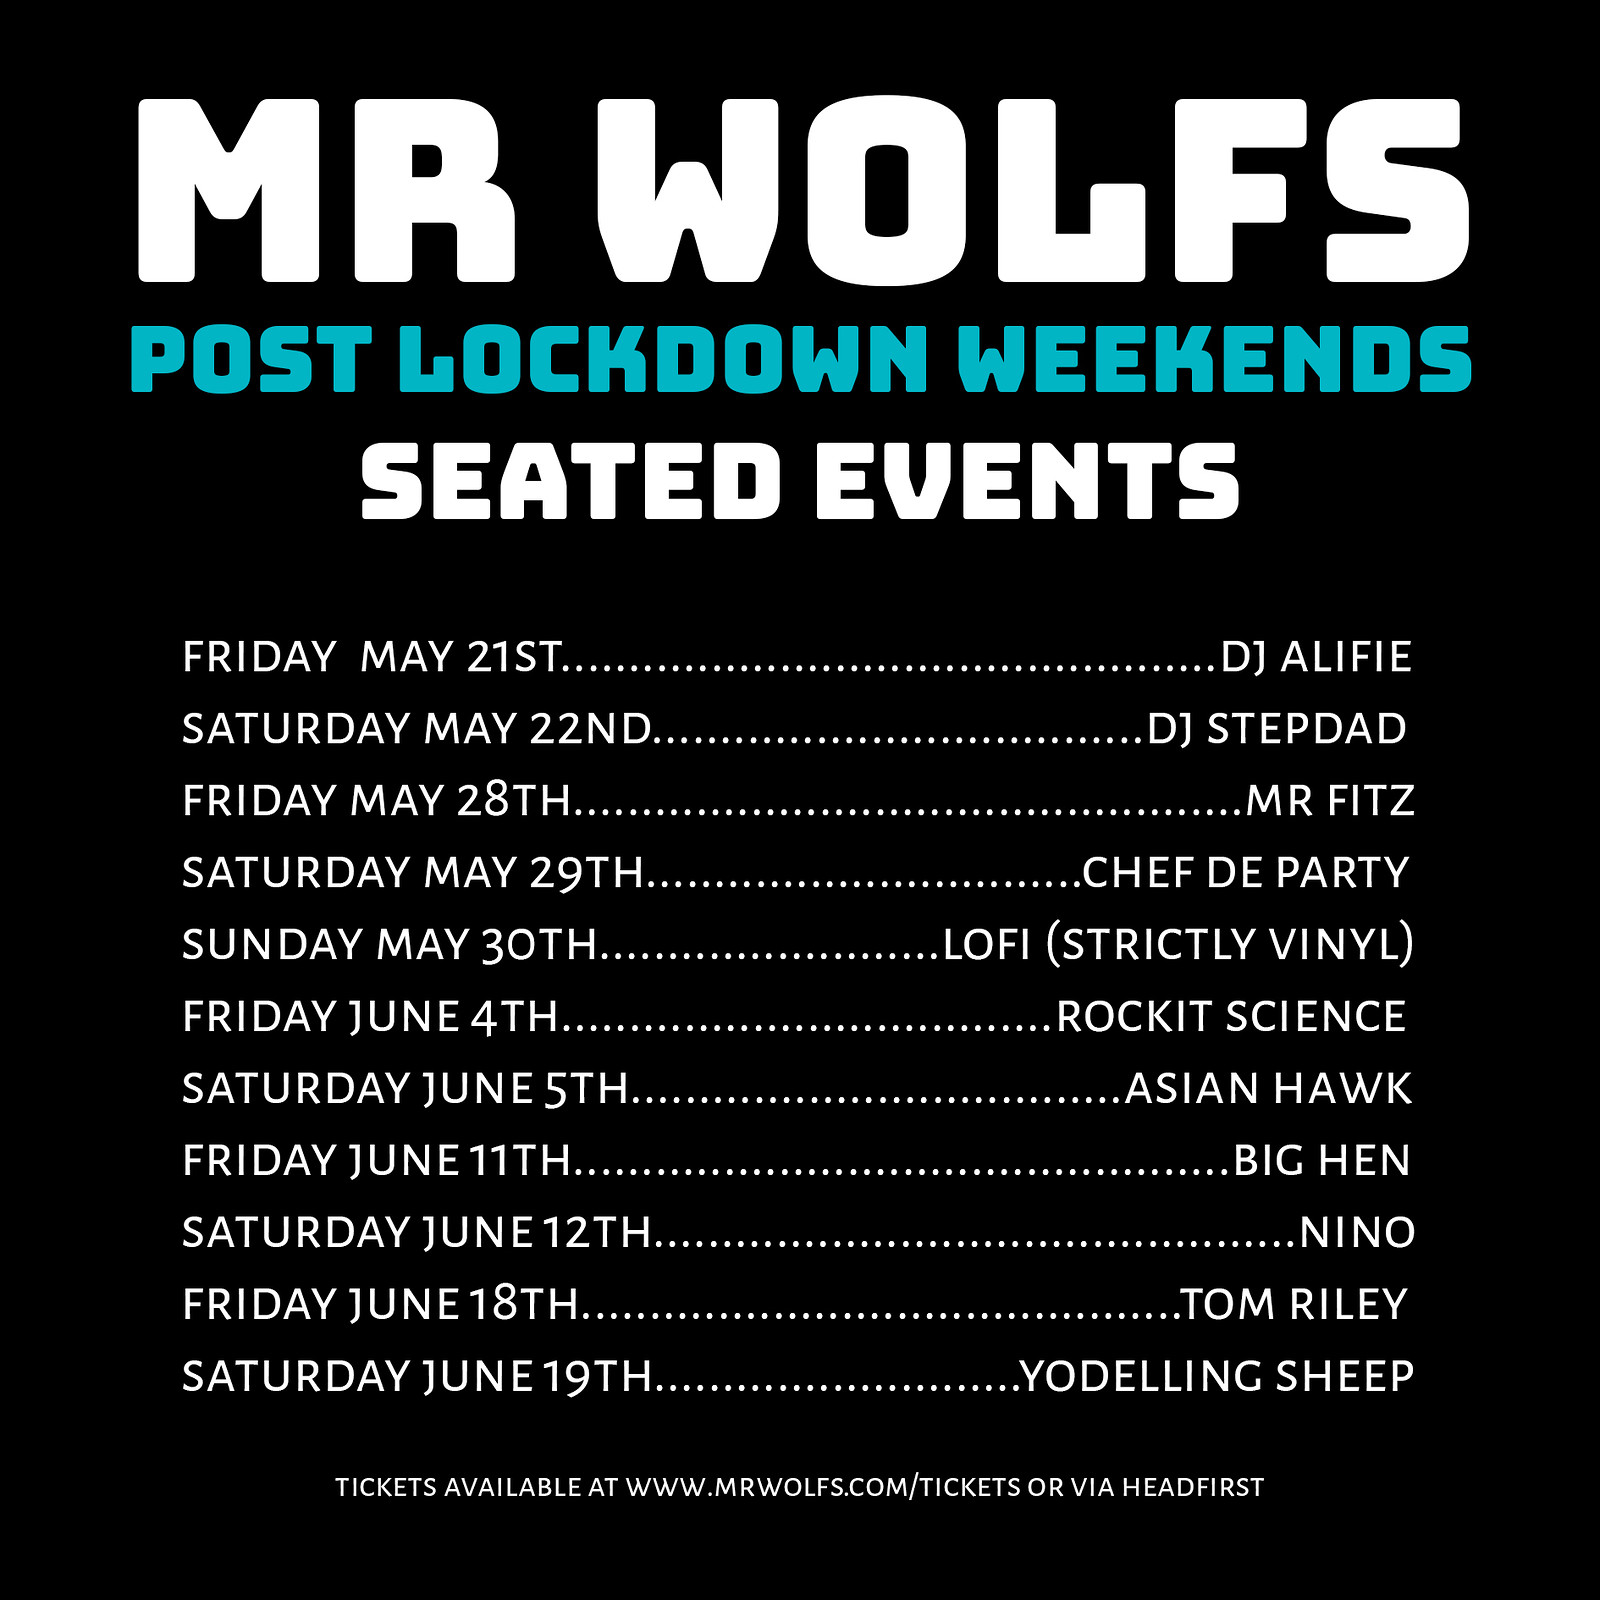 Mr Wolfs Post Lockdown Weekends w/ Mr Fitz at Mr Wolfs